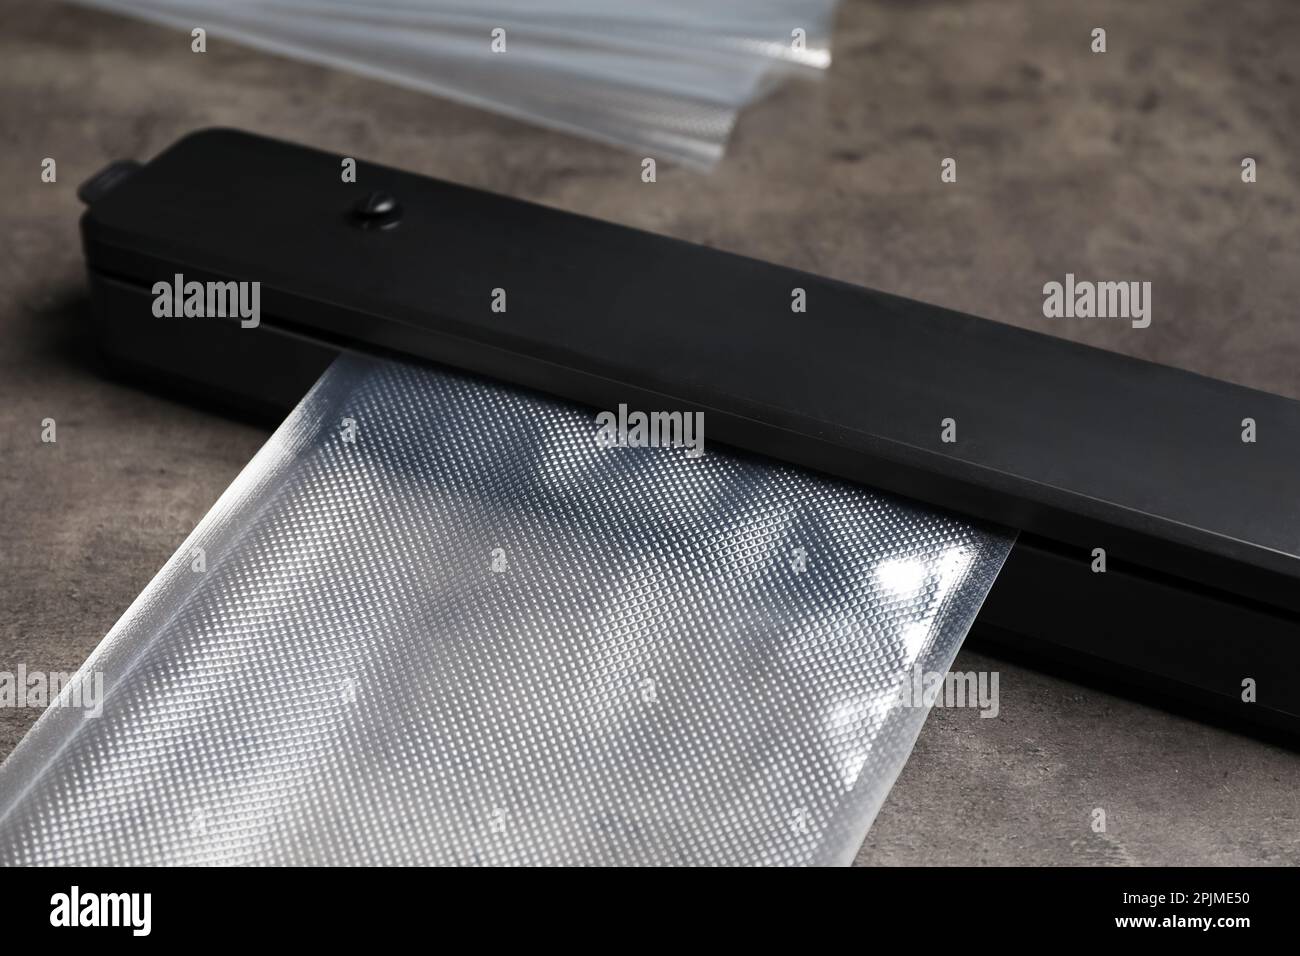 Sigillante per confezionamento sottovuoto con sacchetto di plastica su tavolo grigio, closeup Foto Stock